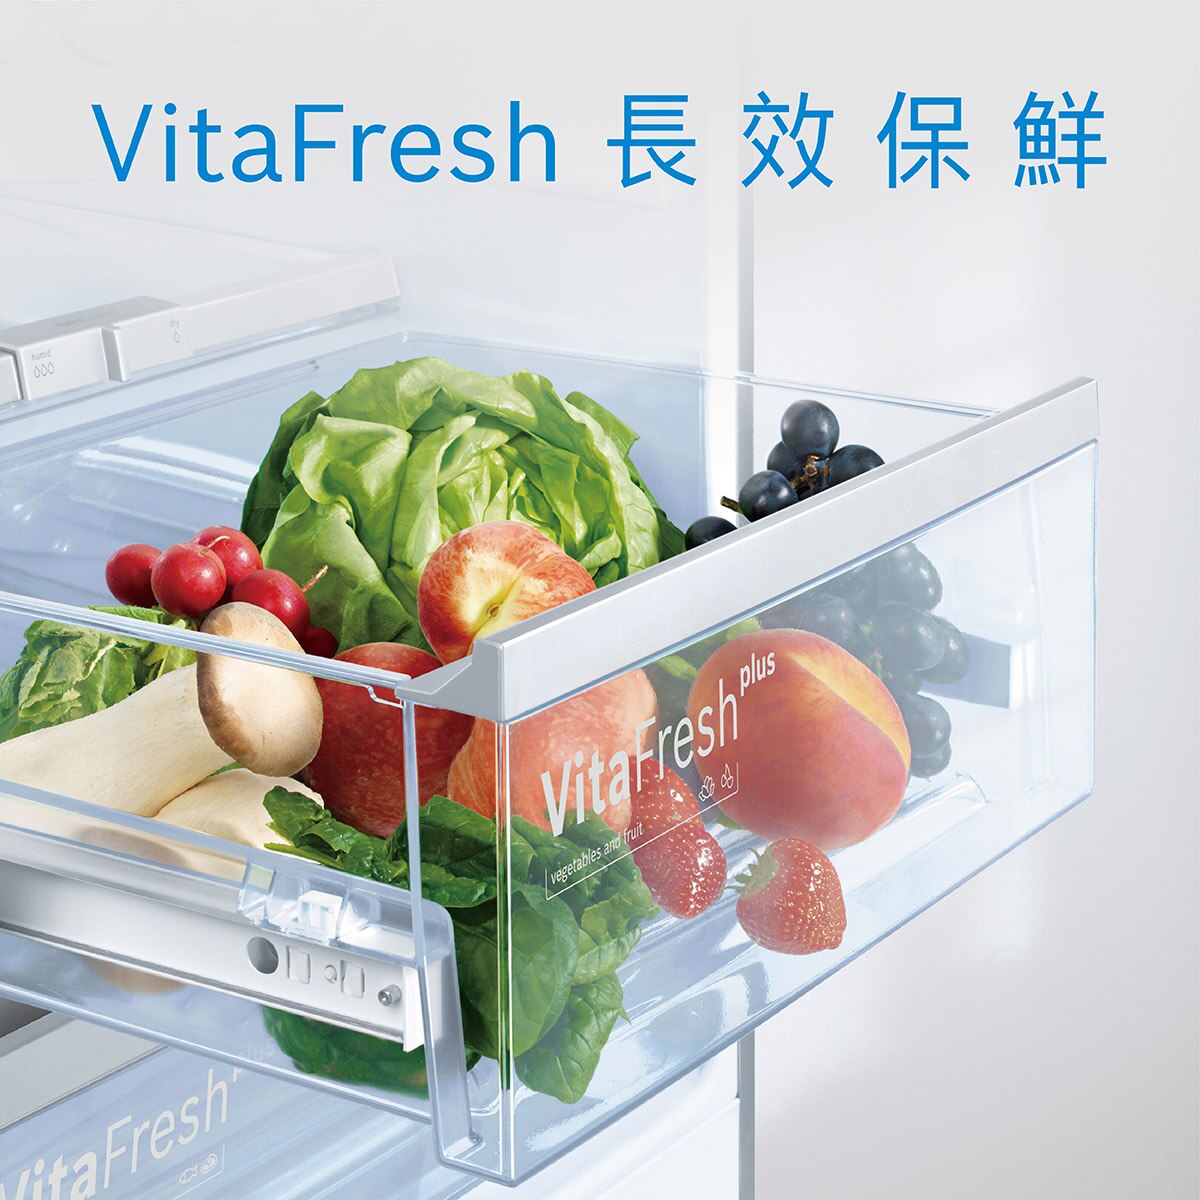 BOSCH博世獨家VitaFresh Plus 保濕生鮮蔬果室與 0˚C冰鮮室，提供蔬果與生鮮最佳濕度與溫度，延長食材2倍保鮮。